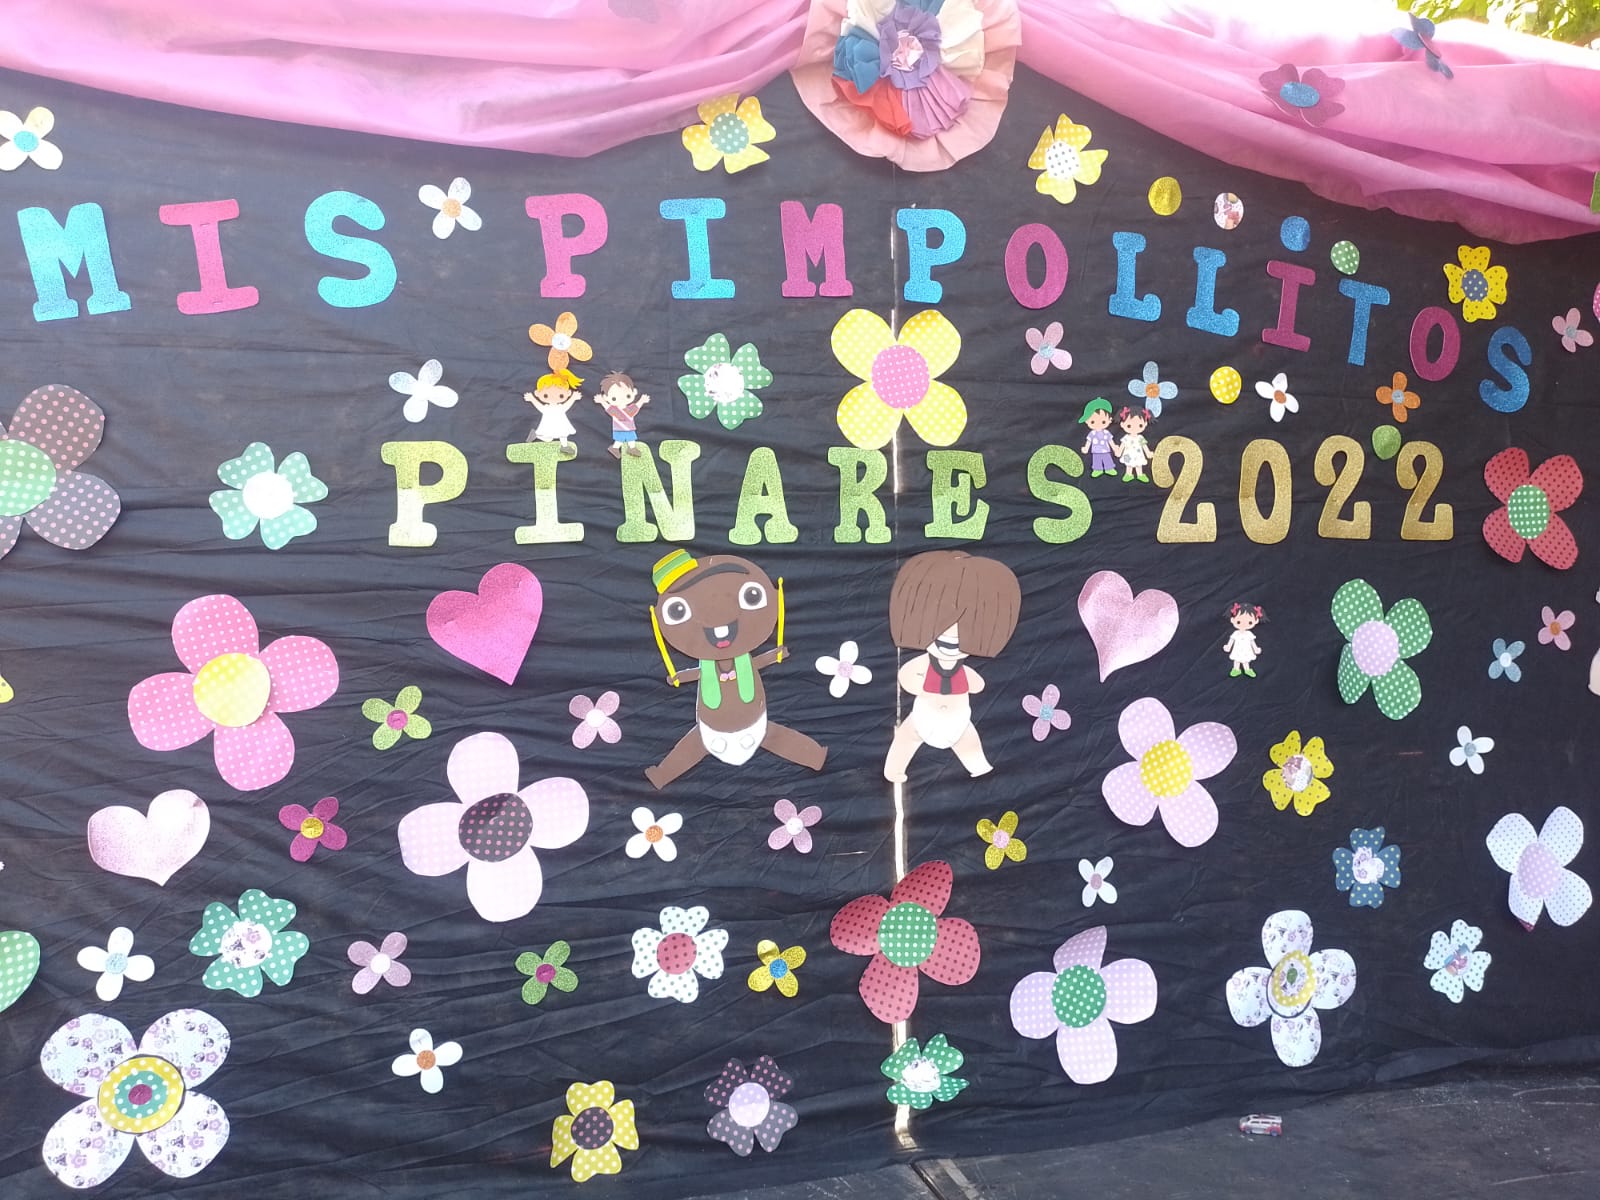 Pinares realizó su fiesta de Miss Pimpollito 2022 con más de 80 candidatos y candidatas